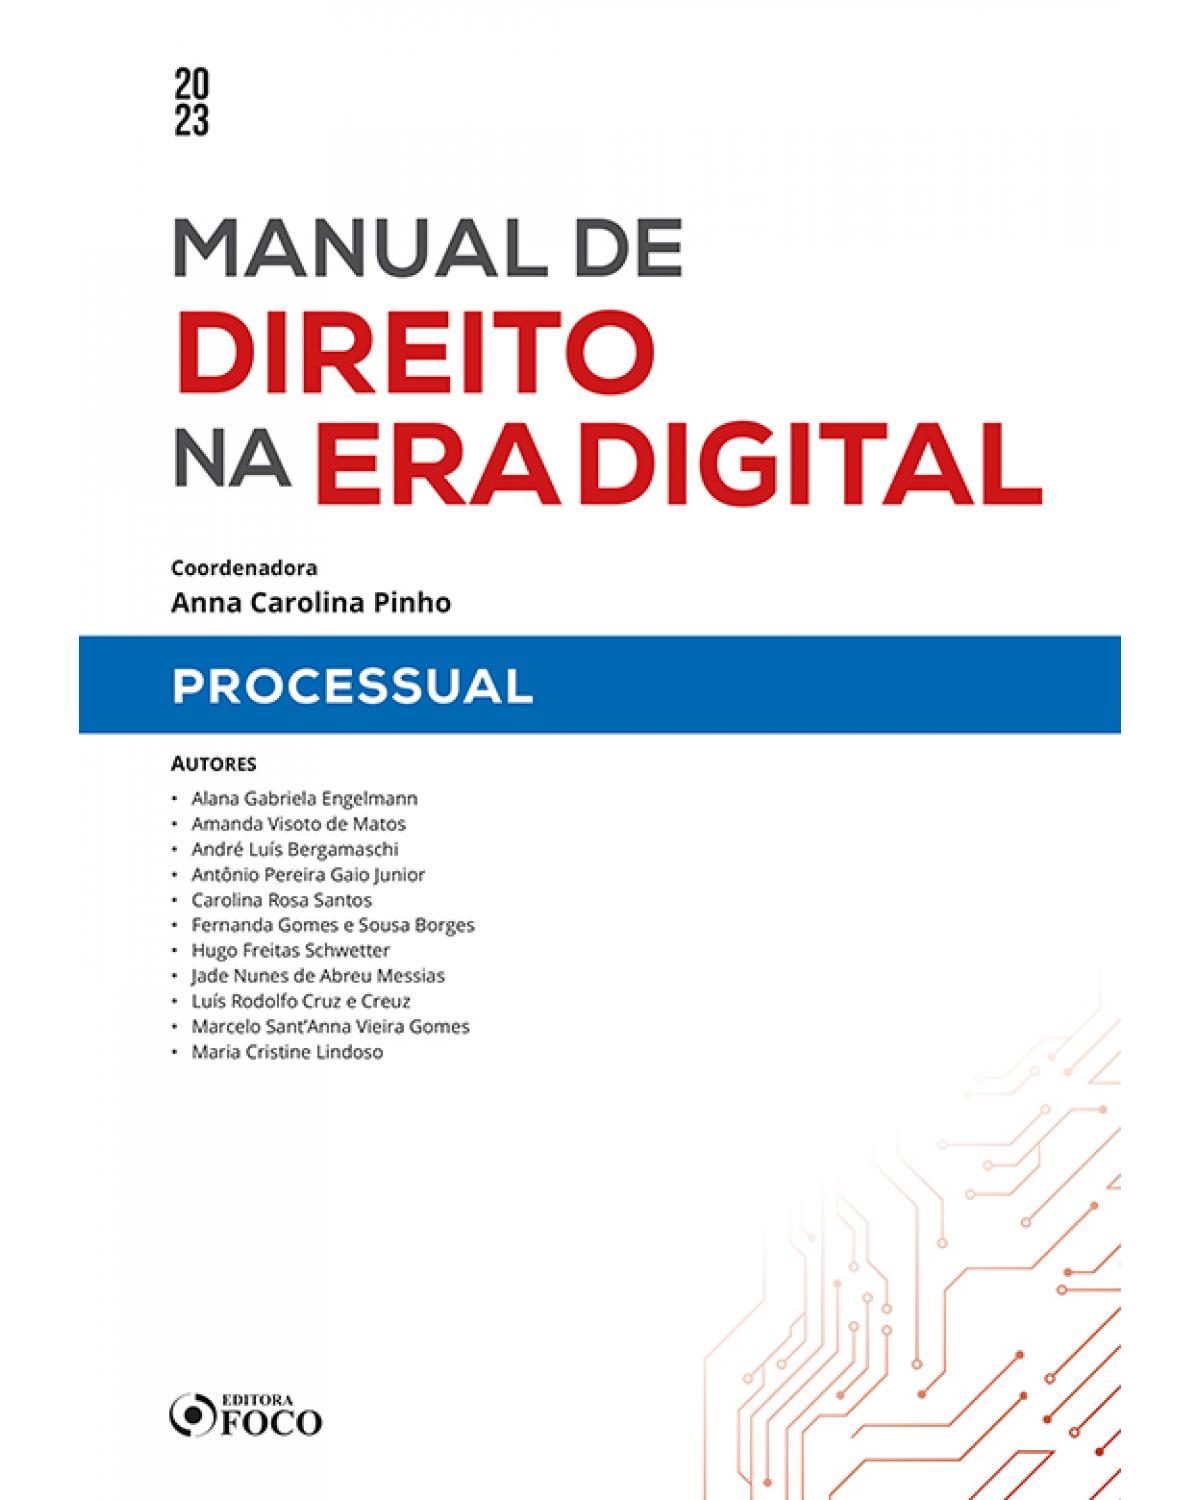 Manual de direito na era digital - processual - 1ª Edição | 2023